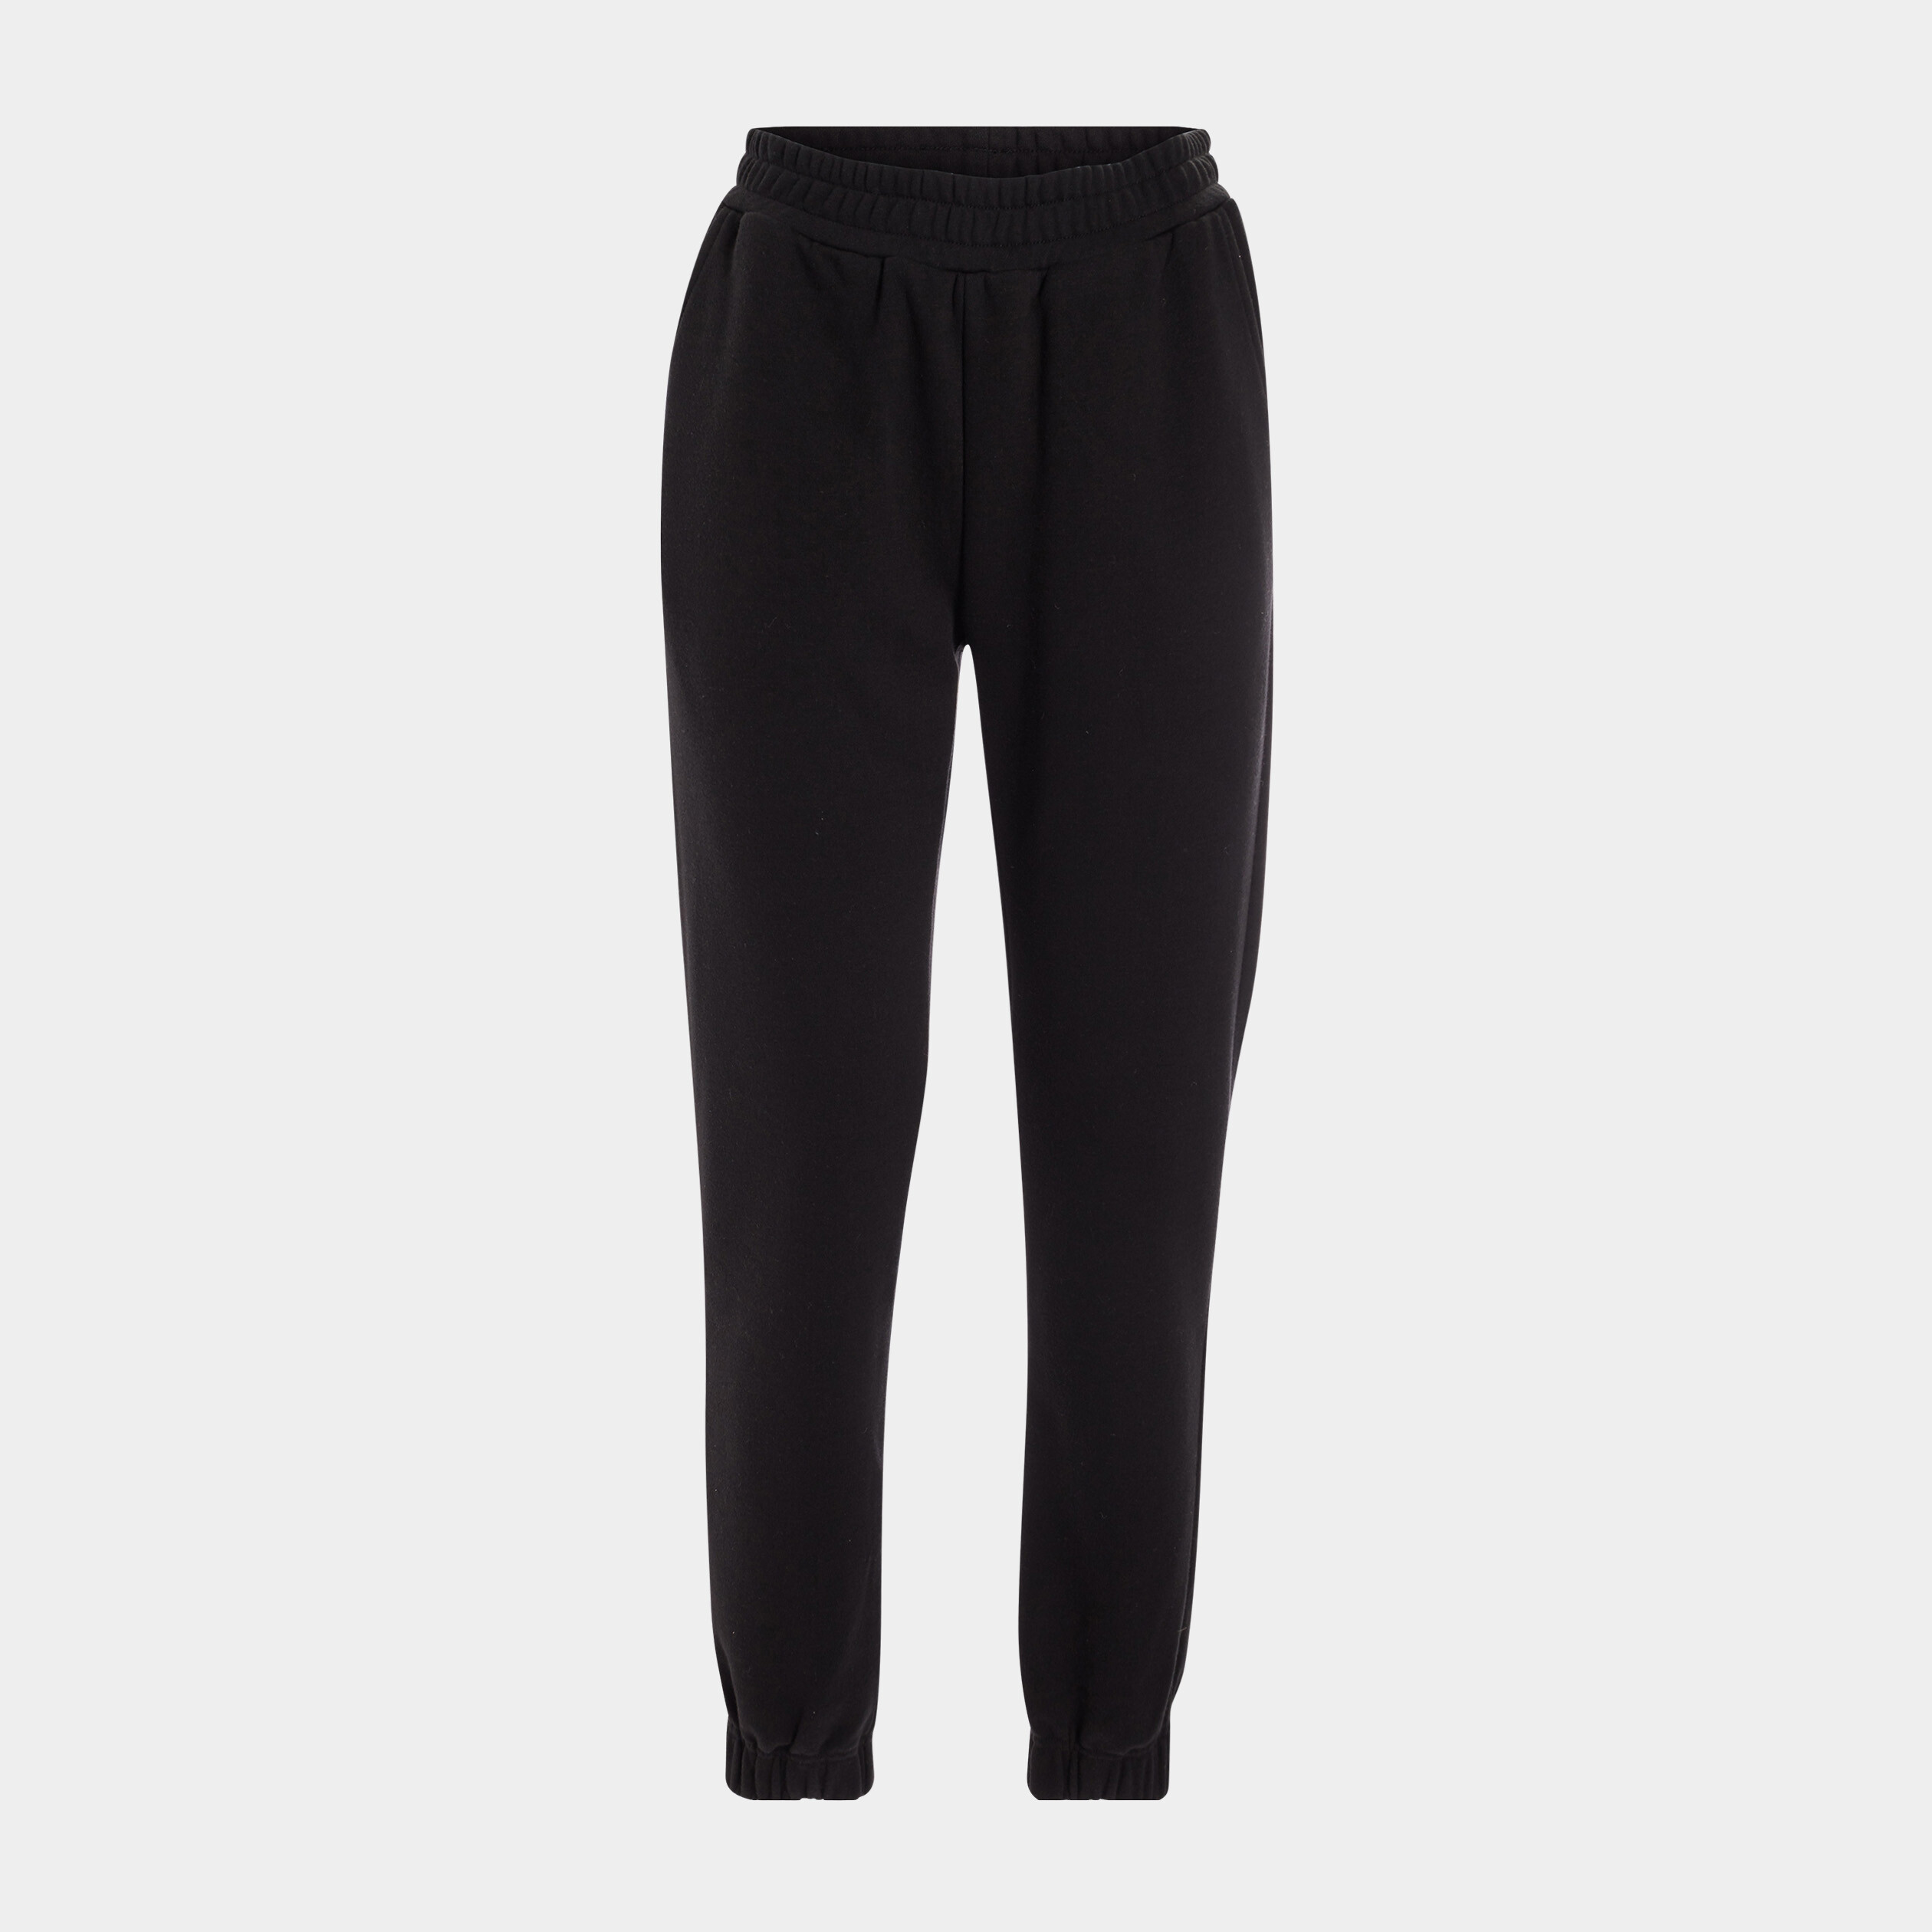 Pantalon de Sport Femme Slim Noir - Élastique Cheville - Séchage